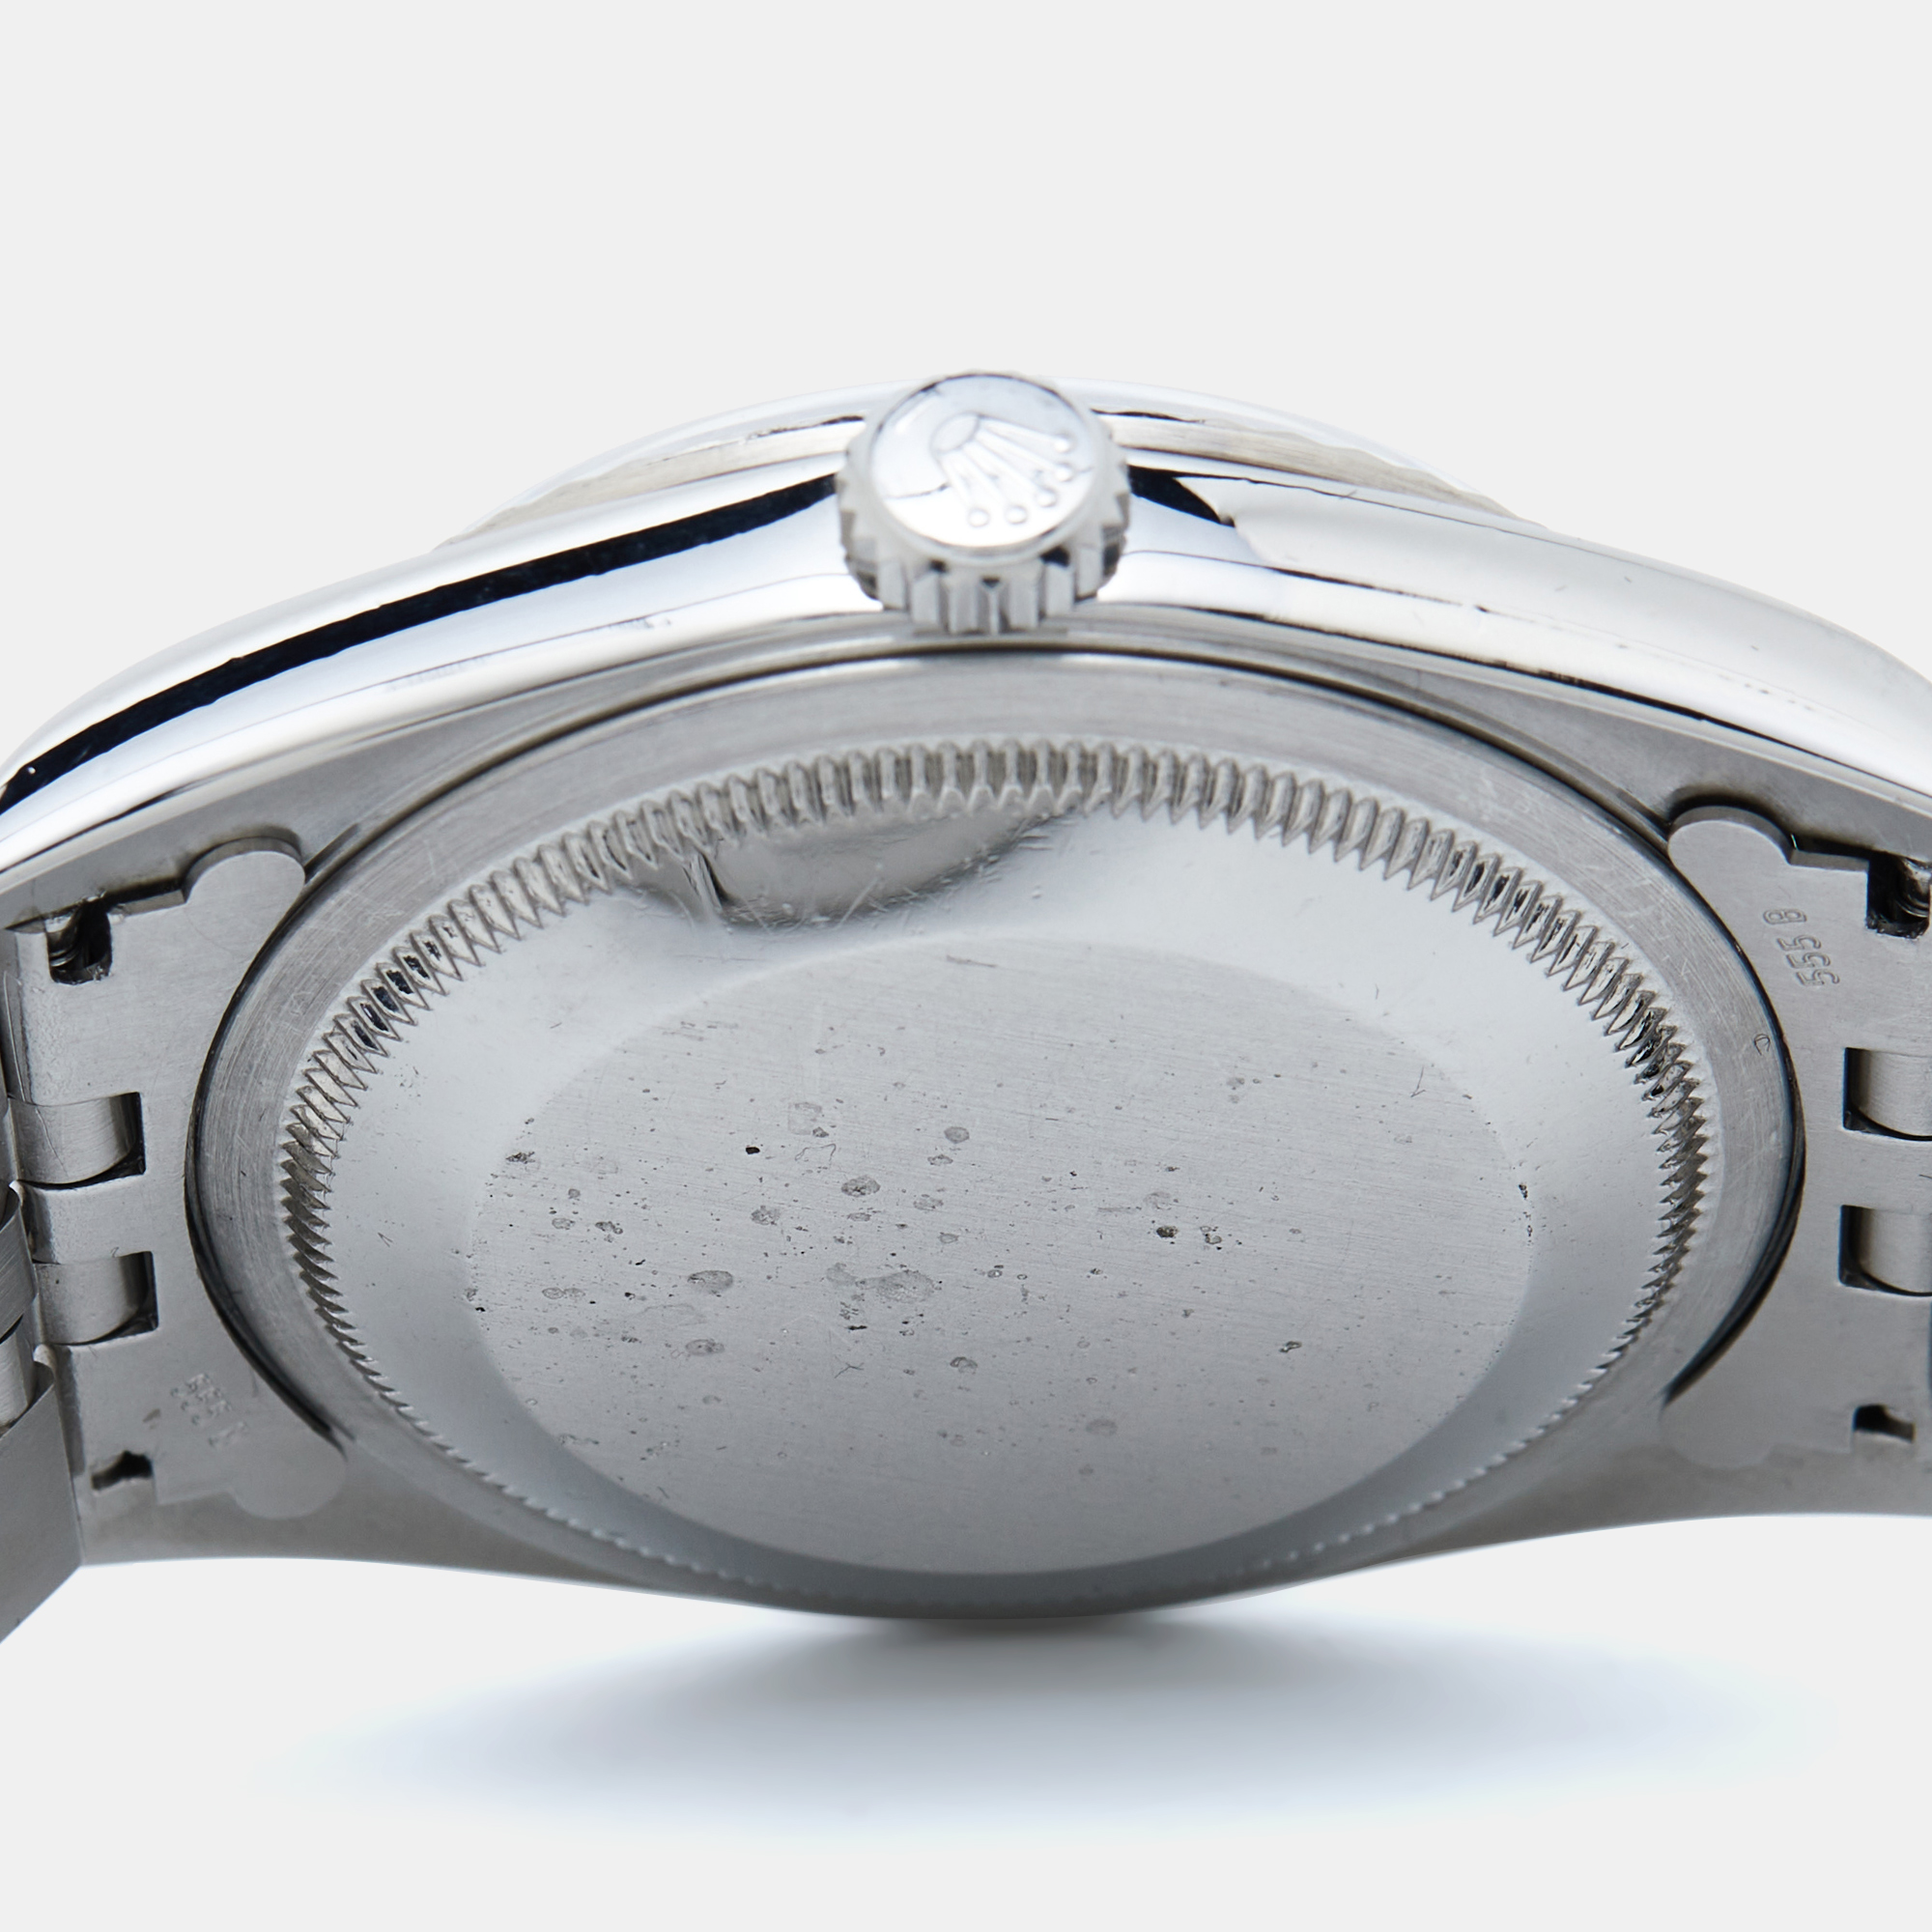 Rolex Silver Sunburst 18K White Gold Stainless Steel Datejust 16234 Men's Wristwatch 36 Mm